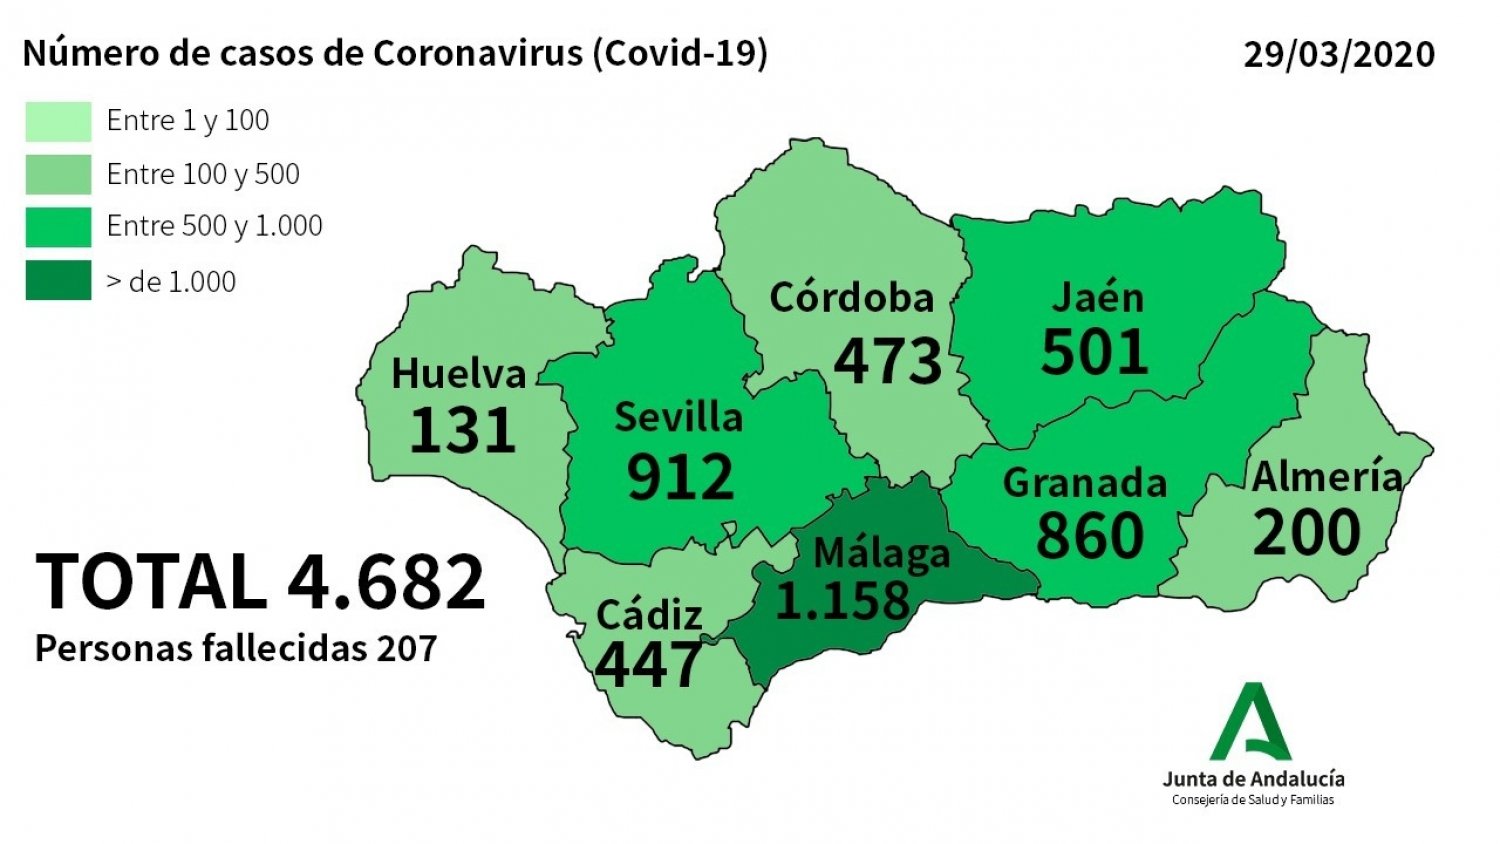 Málaga registra 105 nuevos afectados por coronavirus, la cifra total se sitúa en 1.158 casos